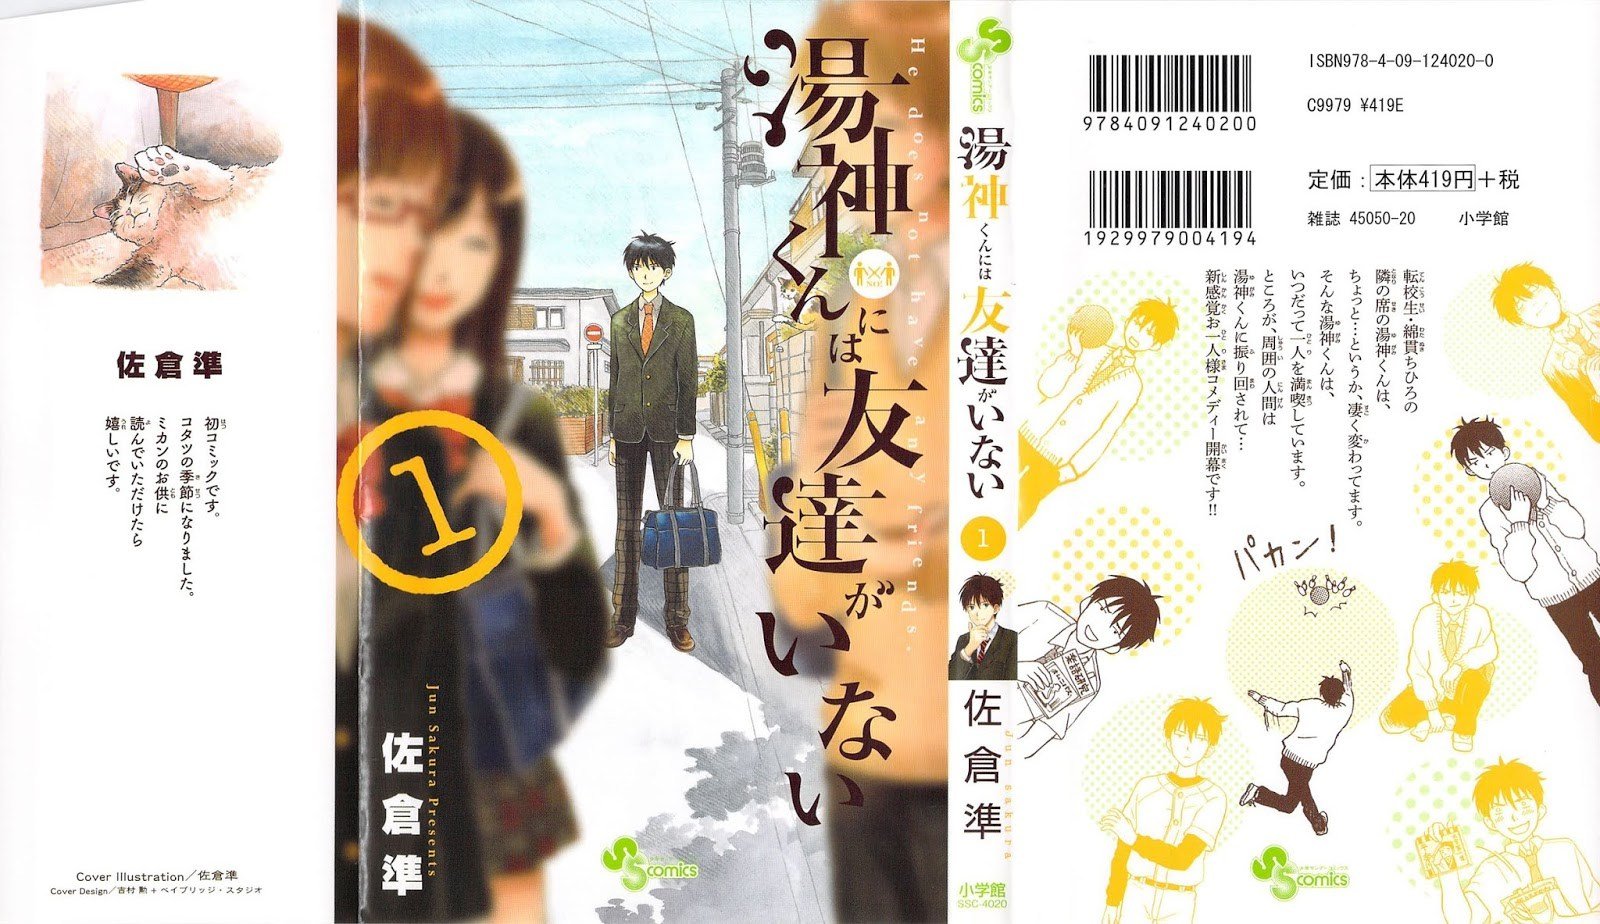 Baca Yugami-kun ni wa Tomodachi ga Inai Chapter 1  - GudangKomik